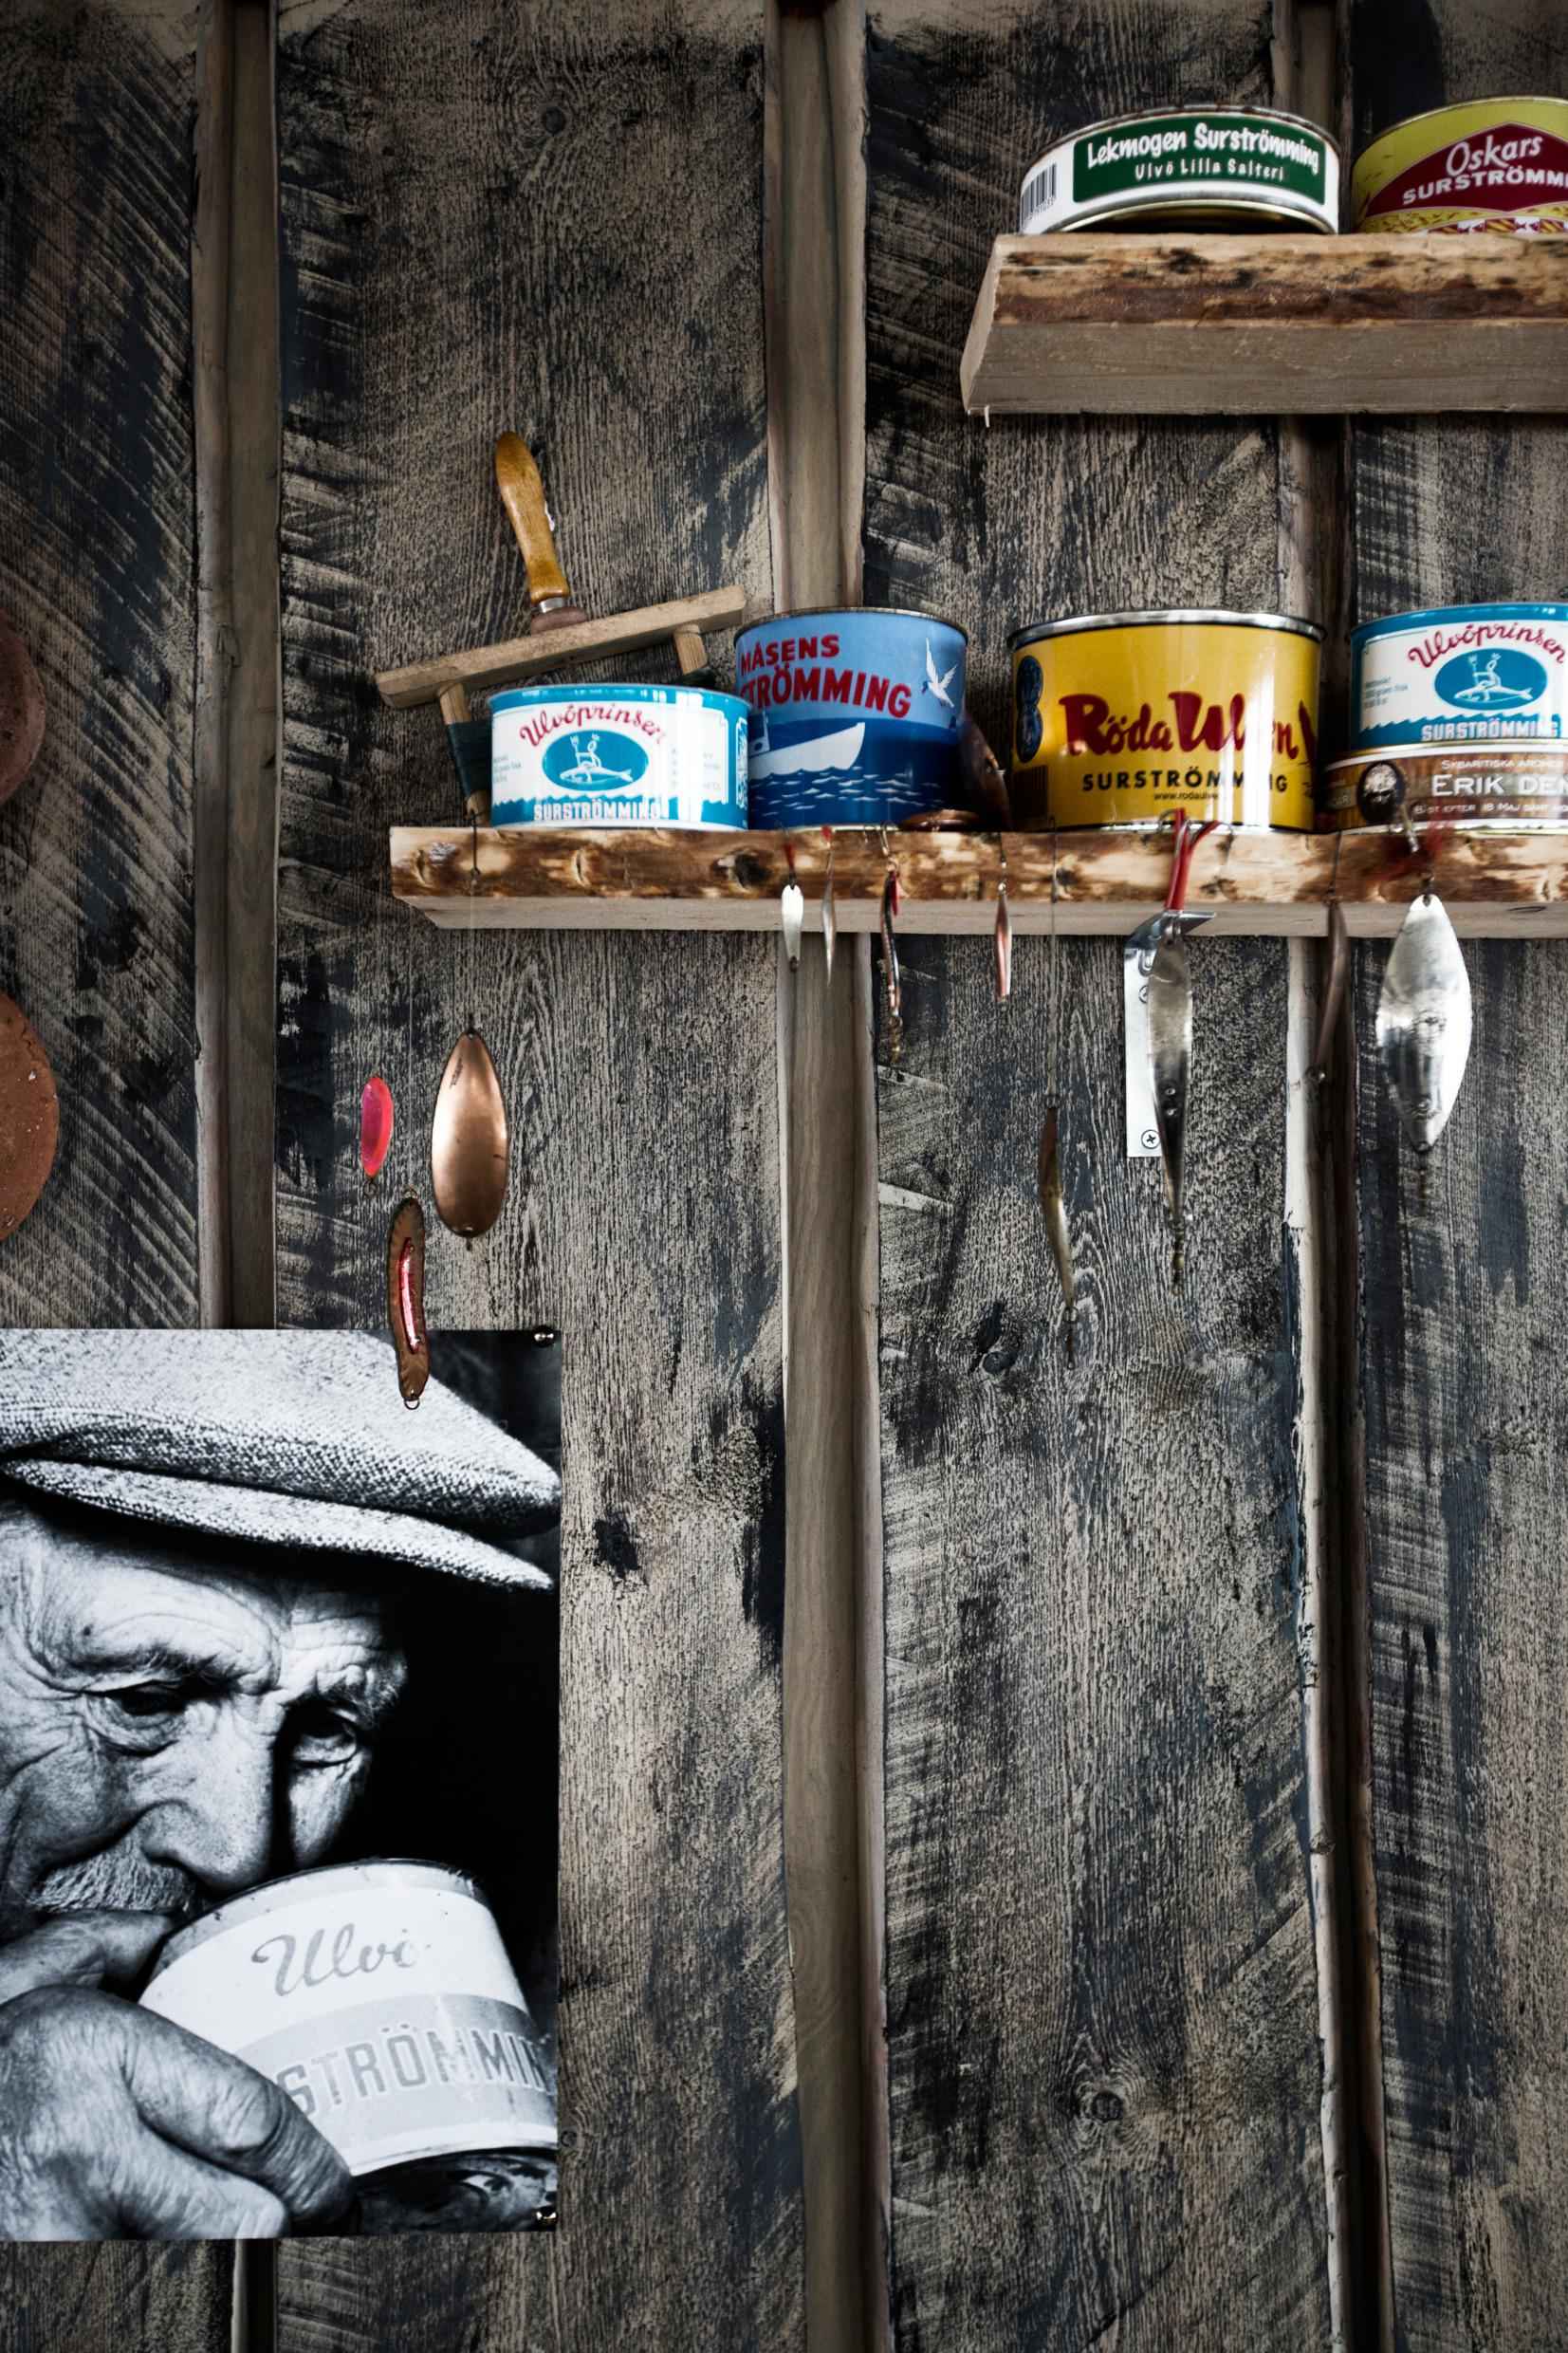 An einer Holzwand stehen verschieden Dosen mit fermentiertem Hering auf einem Regal. Ein schwarz-weißes Foto eines alten Mannes hängt an der Wand., der an einer Dose riecht.